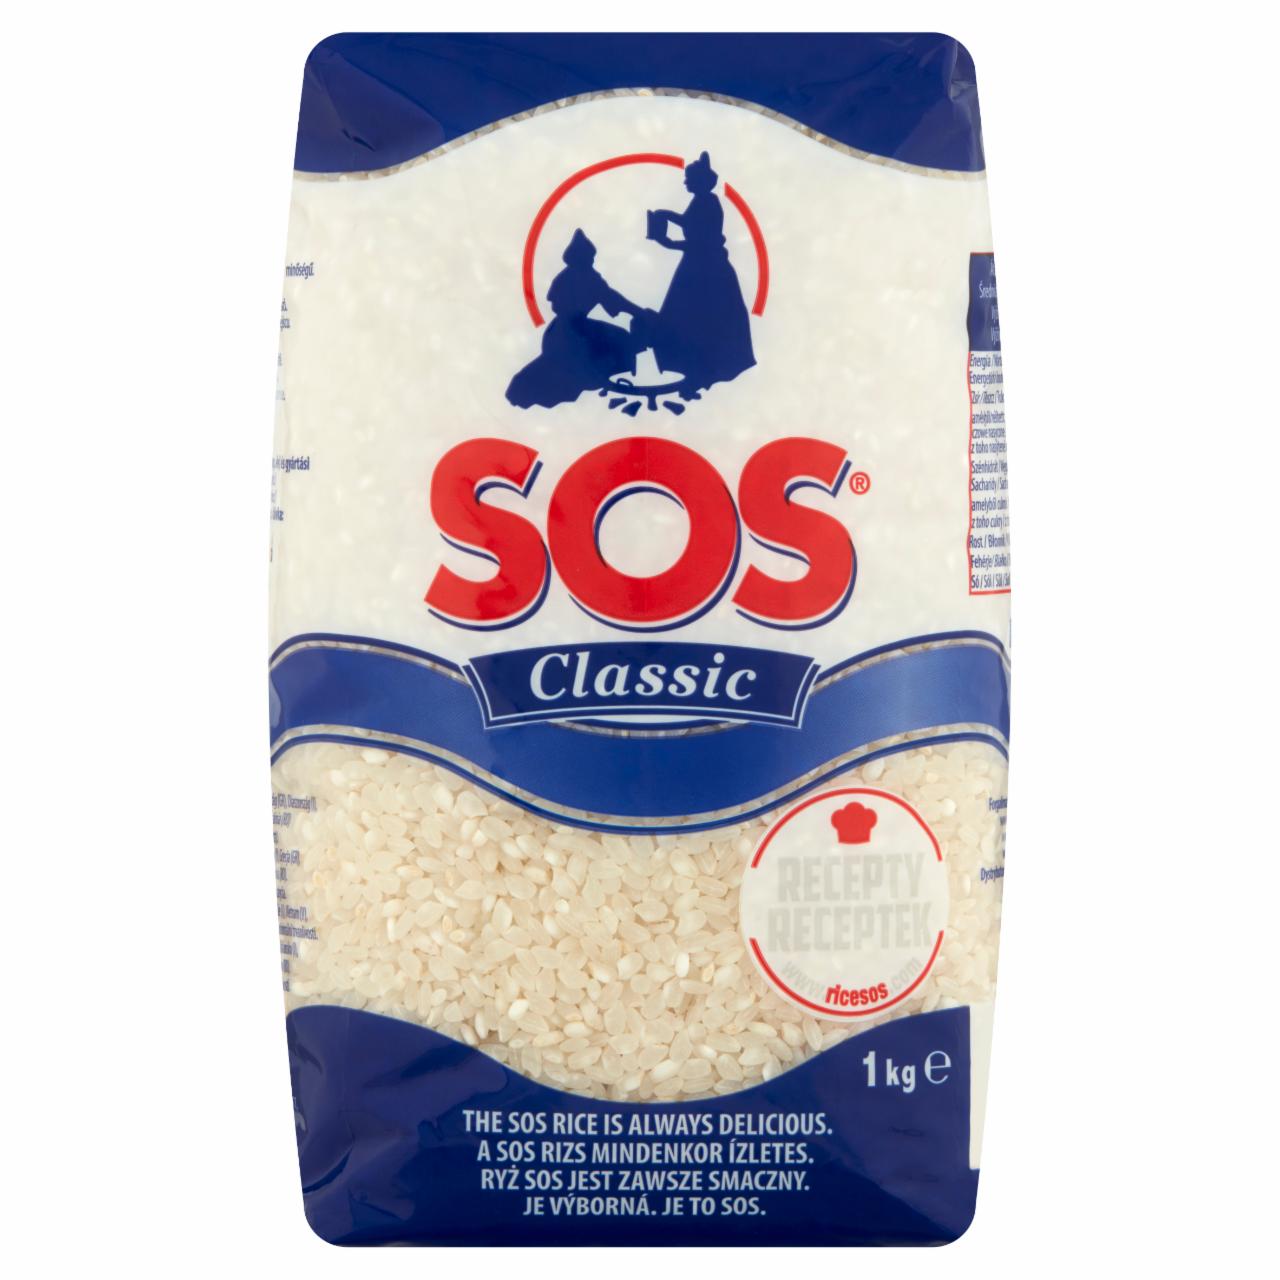 Képek - SOS Classic közepes szemű, hántolt 'A' minőségű rizs 1 kg